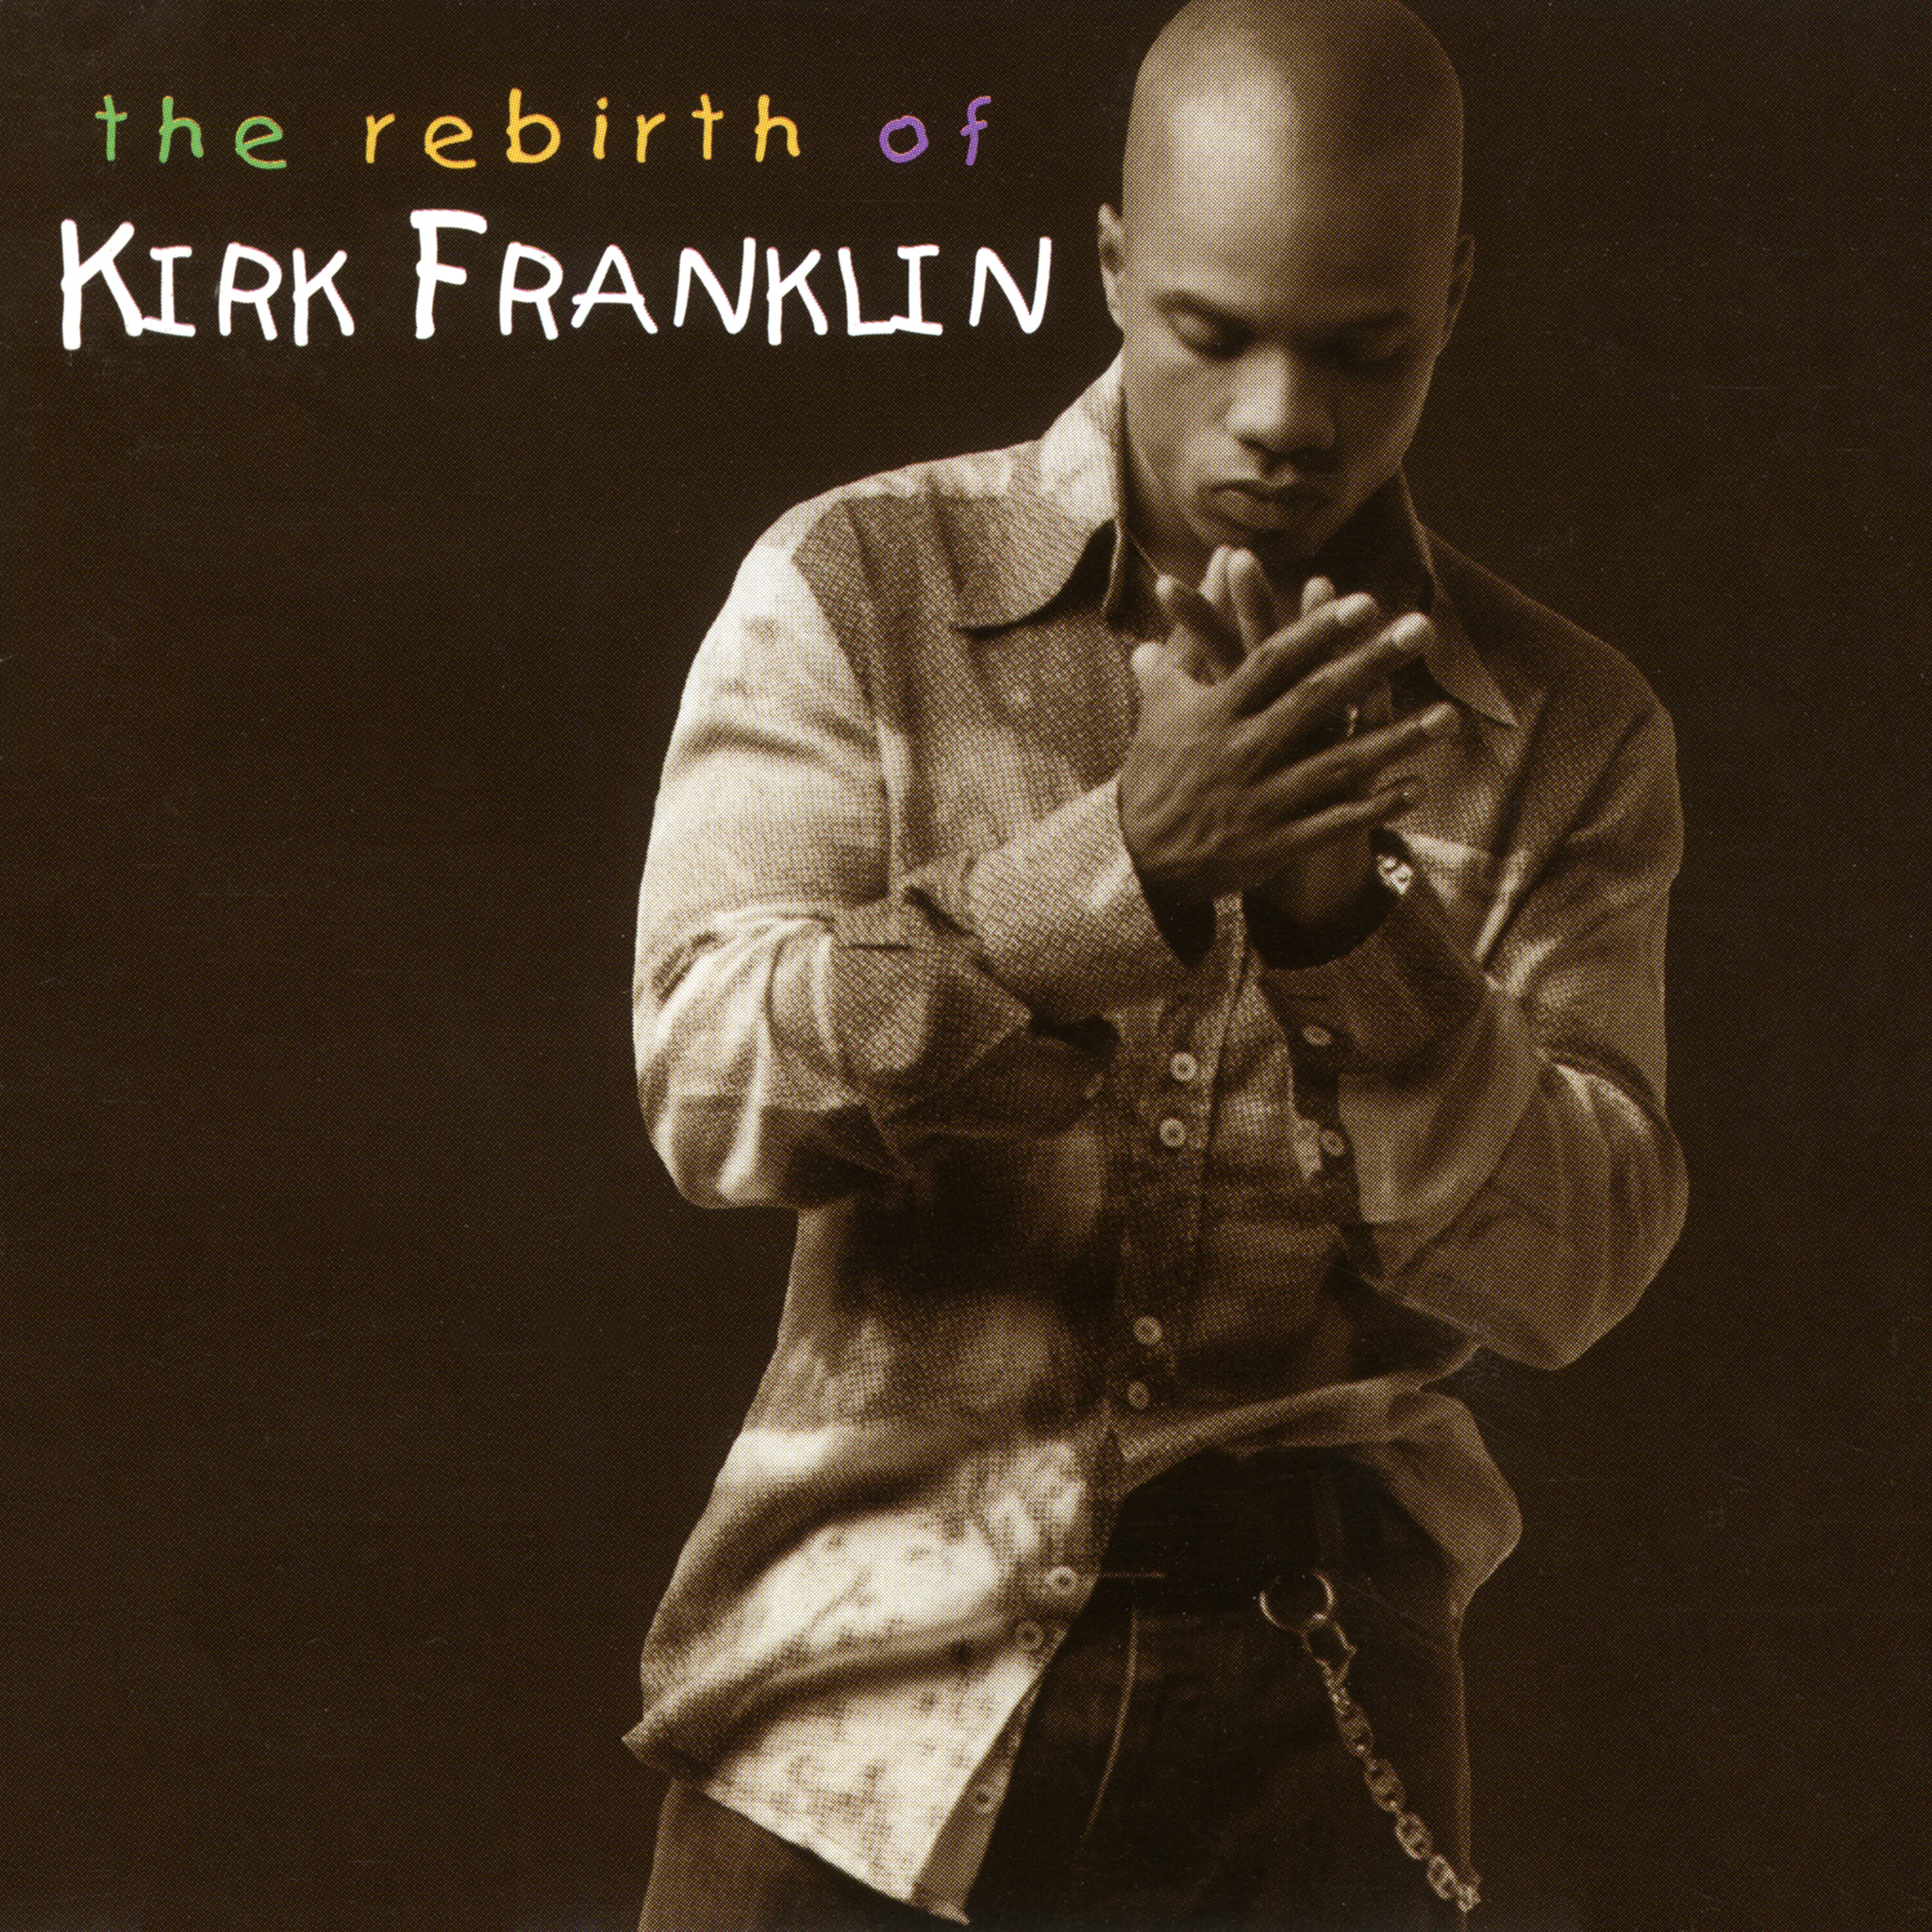 kirk franklin rebirth video